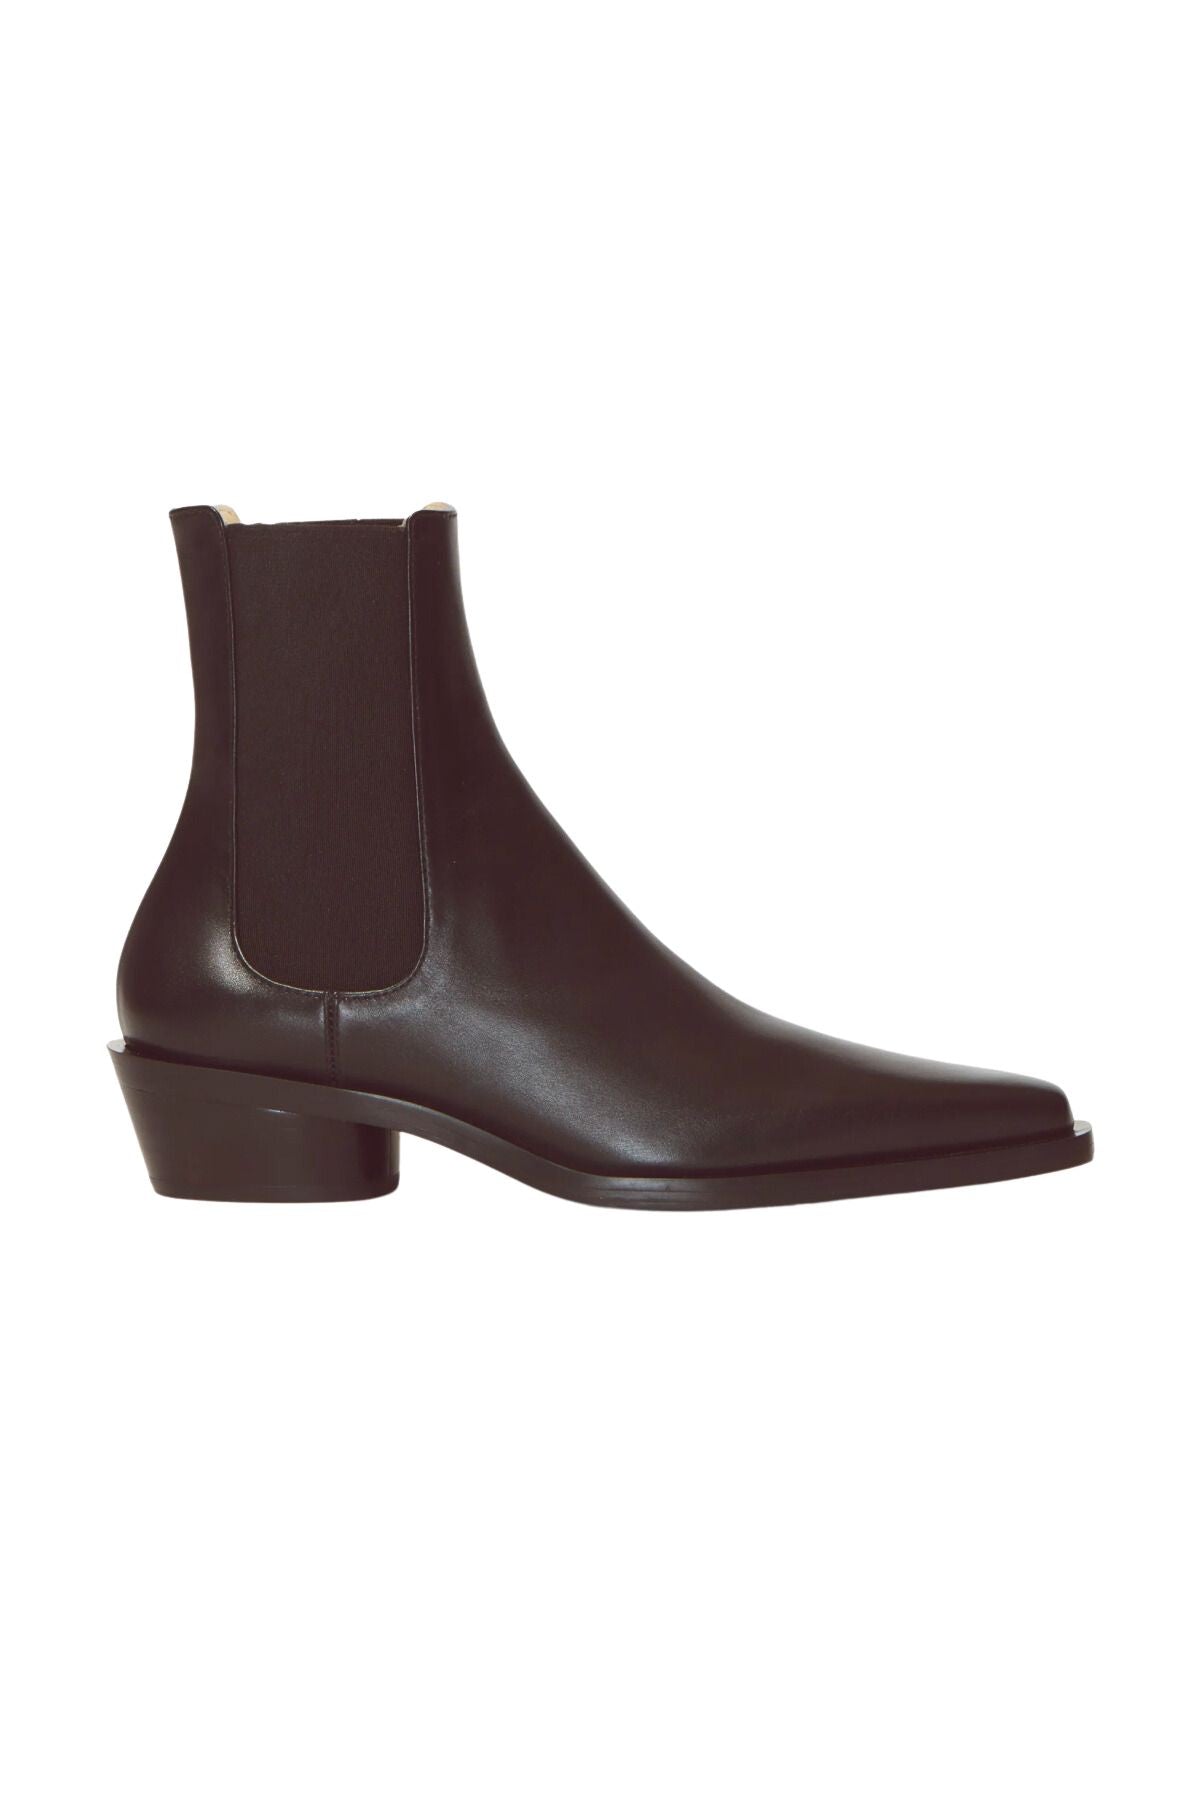 Boots – Grace Melbourne